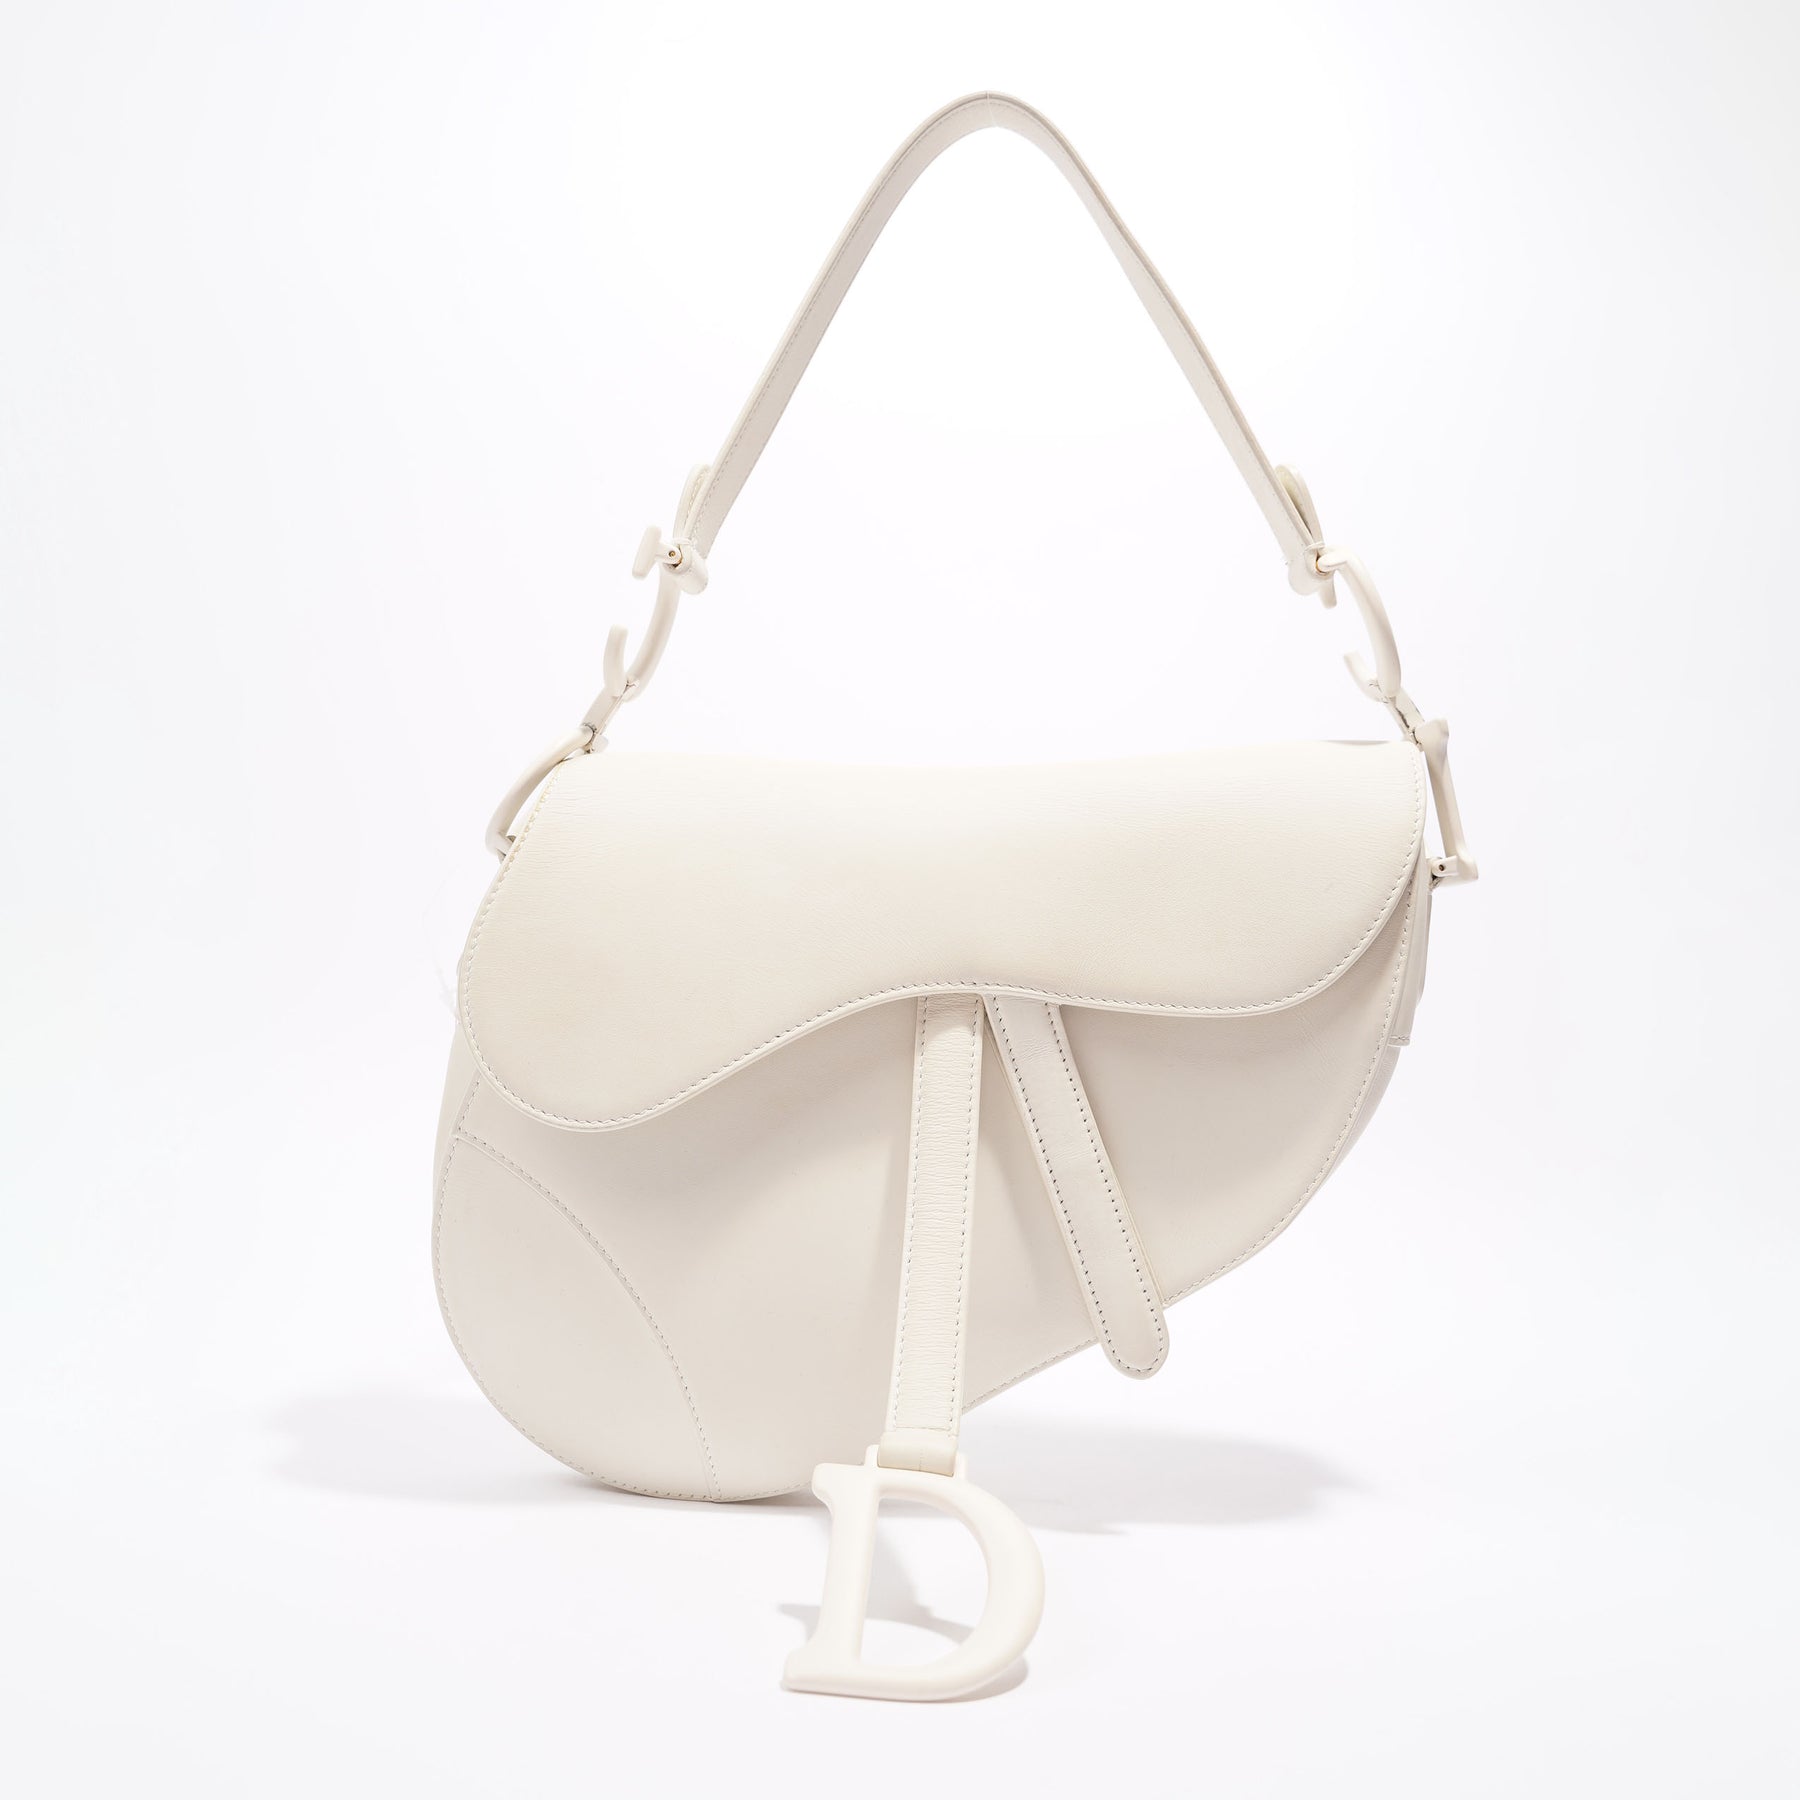 Christian Dior Bag, Tan & White Leather Saddle Bag